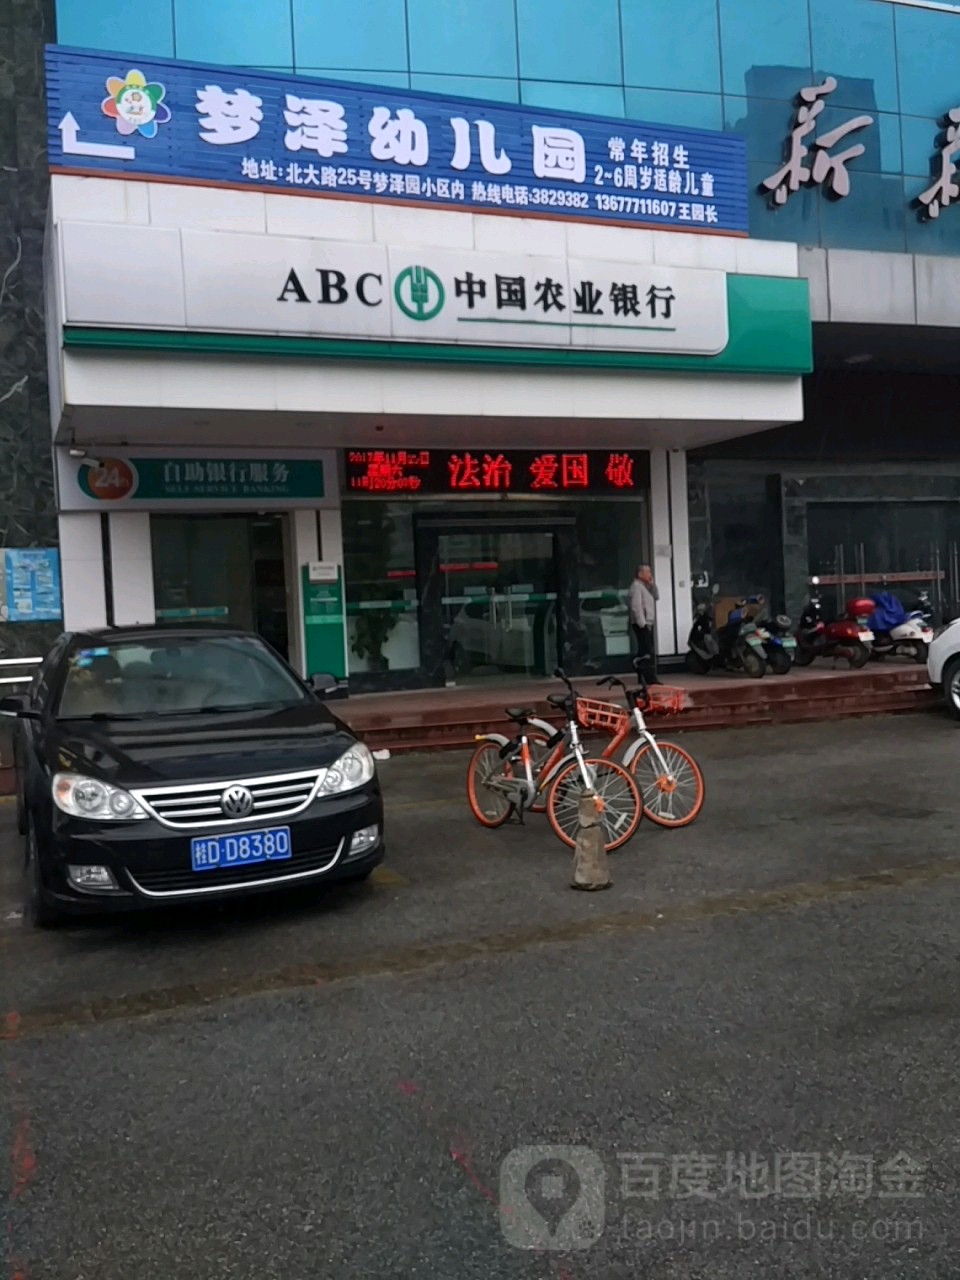 中國農業銀行24小時自助銀行服務(南寧北大支行)